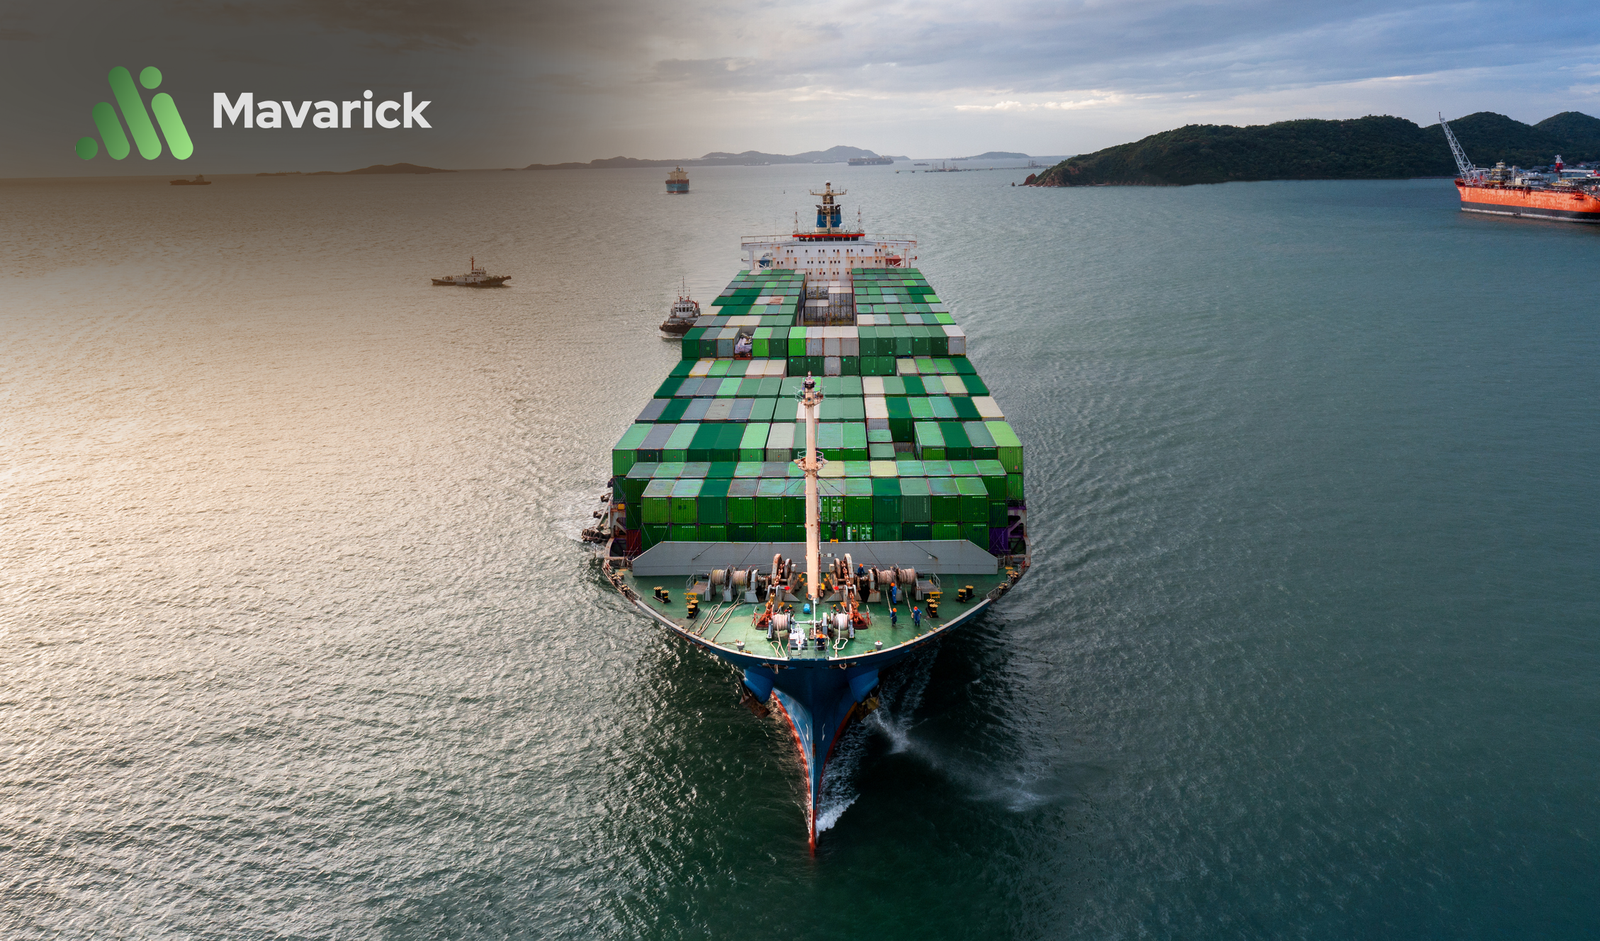 Ship transporting goods to the EU with Mavarick logo